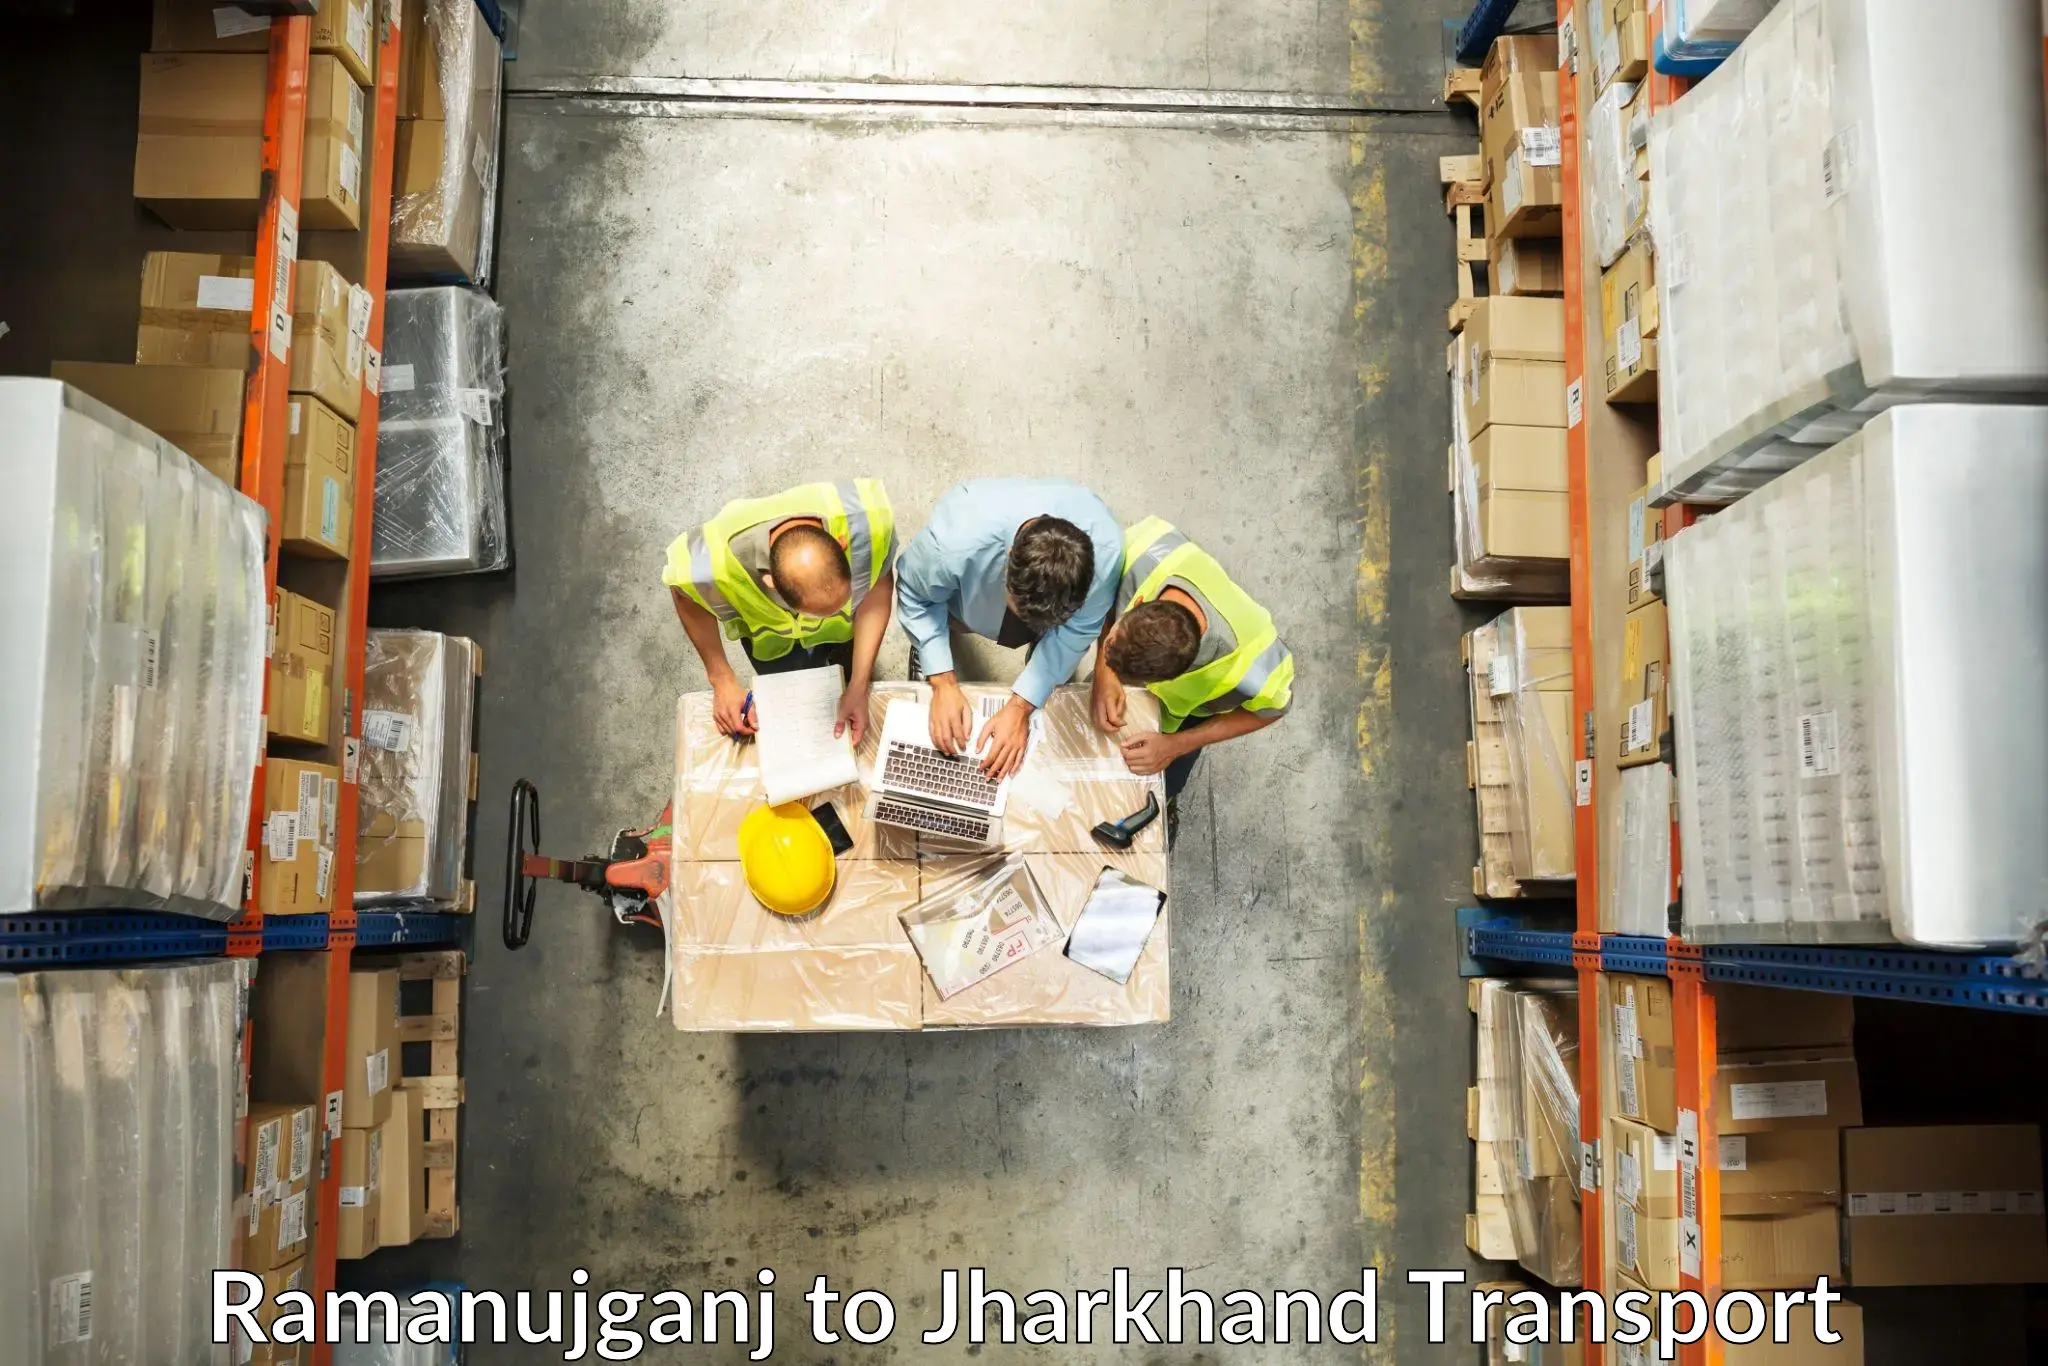 Lorry transport service in Ramanujganj to Daltonganj